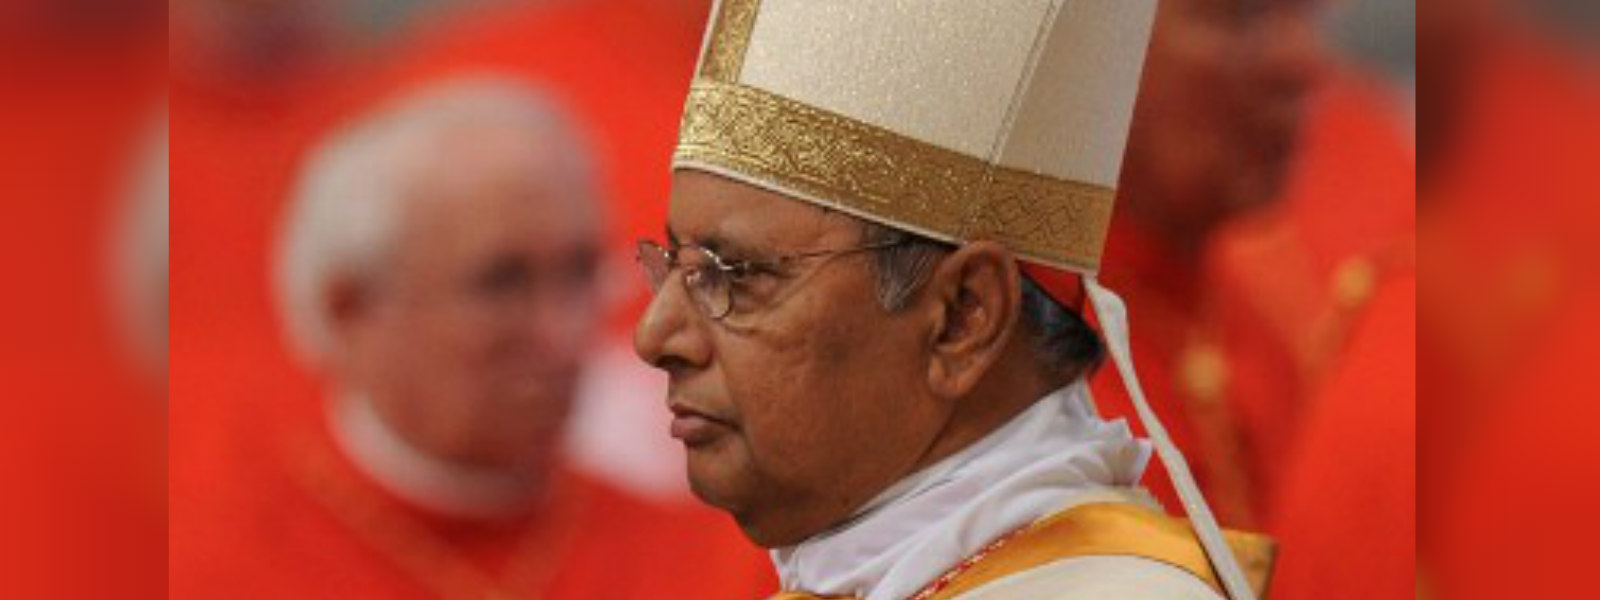 Archbishop visits Ven. Rathana thero